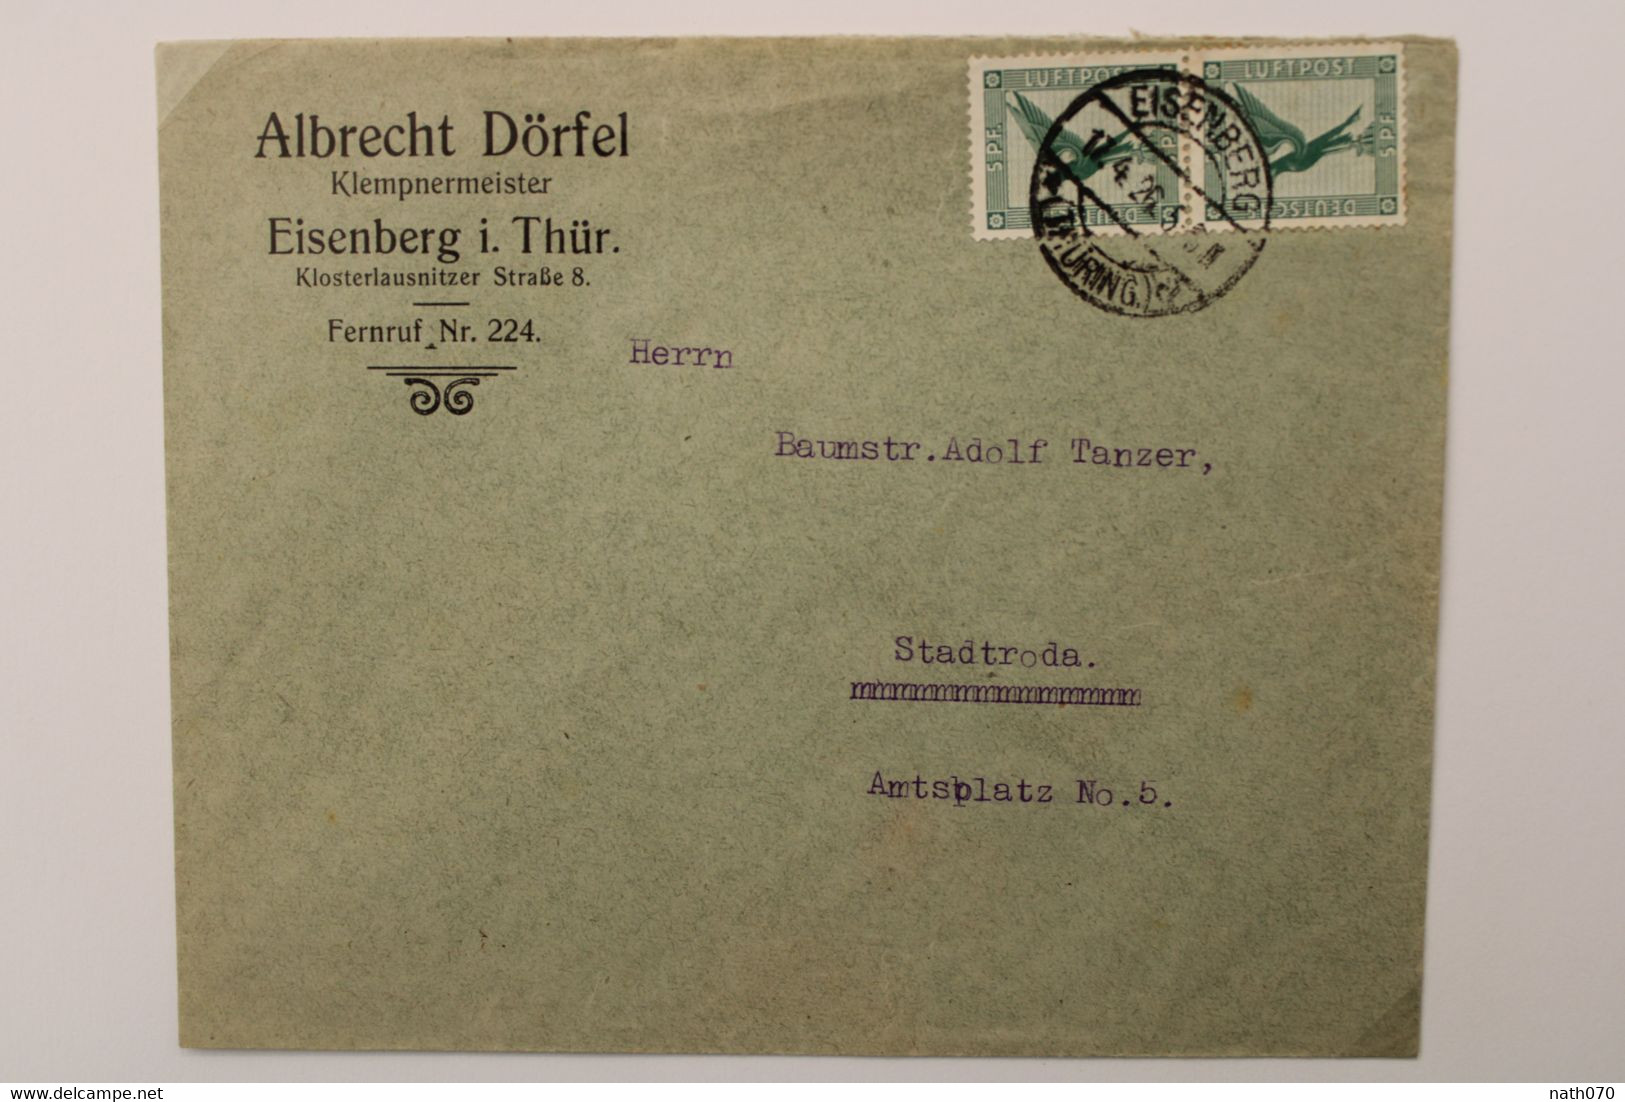 1926 Eisenberg Stadtroda Flugpost Paar Luftpost Air Mail Poste Aerienne Cover Deutsches Reich Germany Allemagne Mi 378 - Lettres & Documents